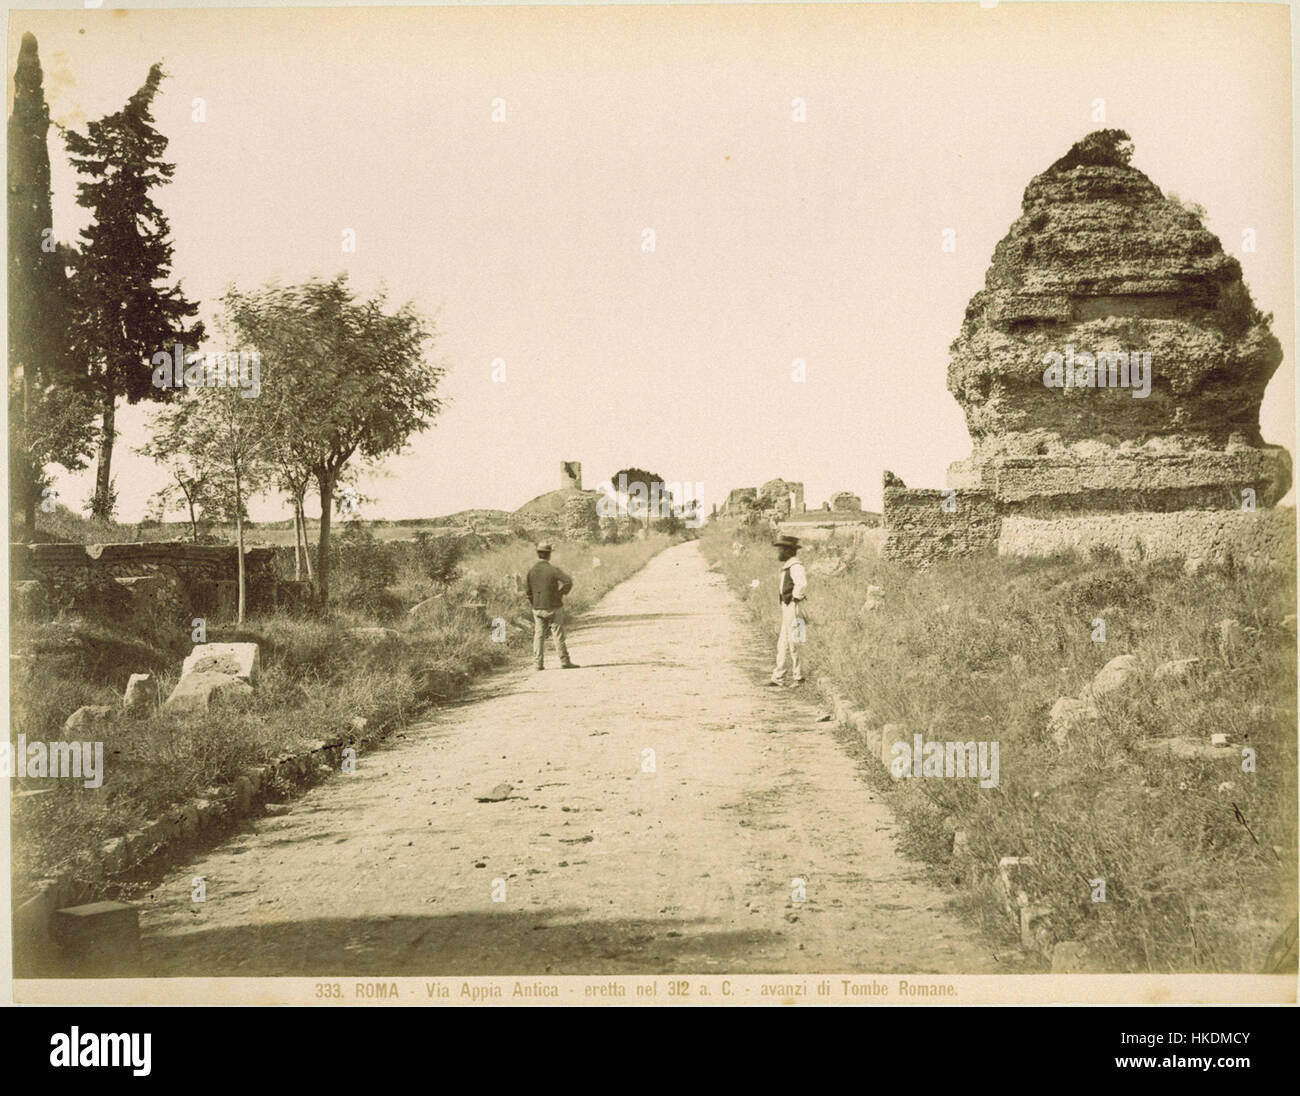 Via Appia in 1870 890 Stockfoto